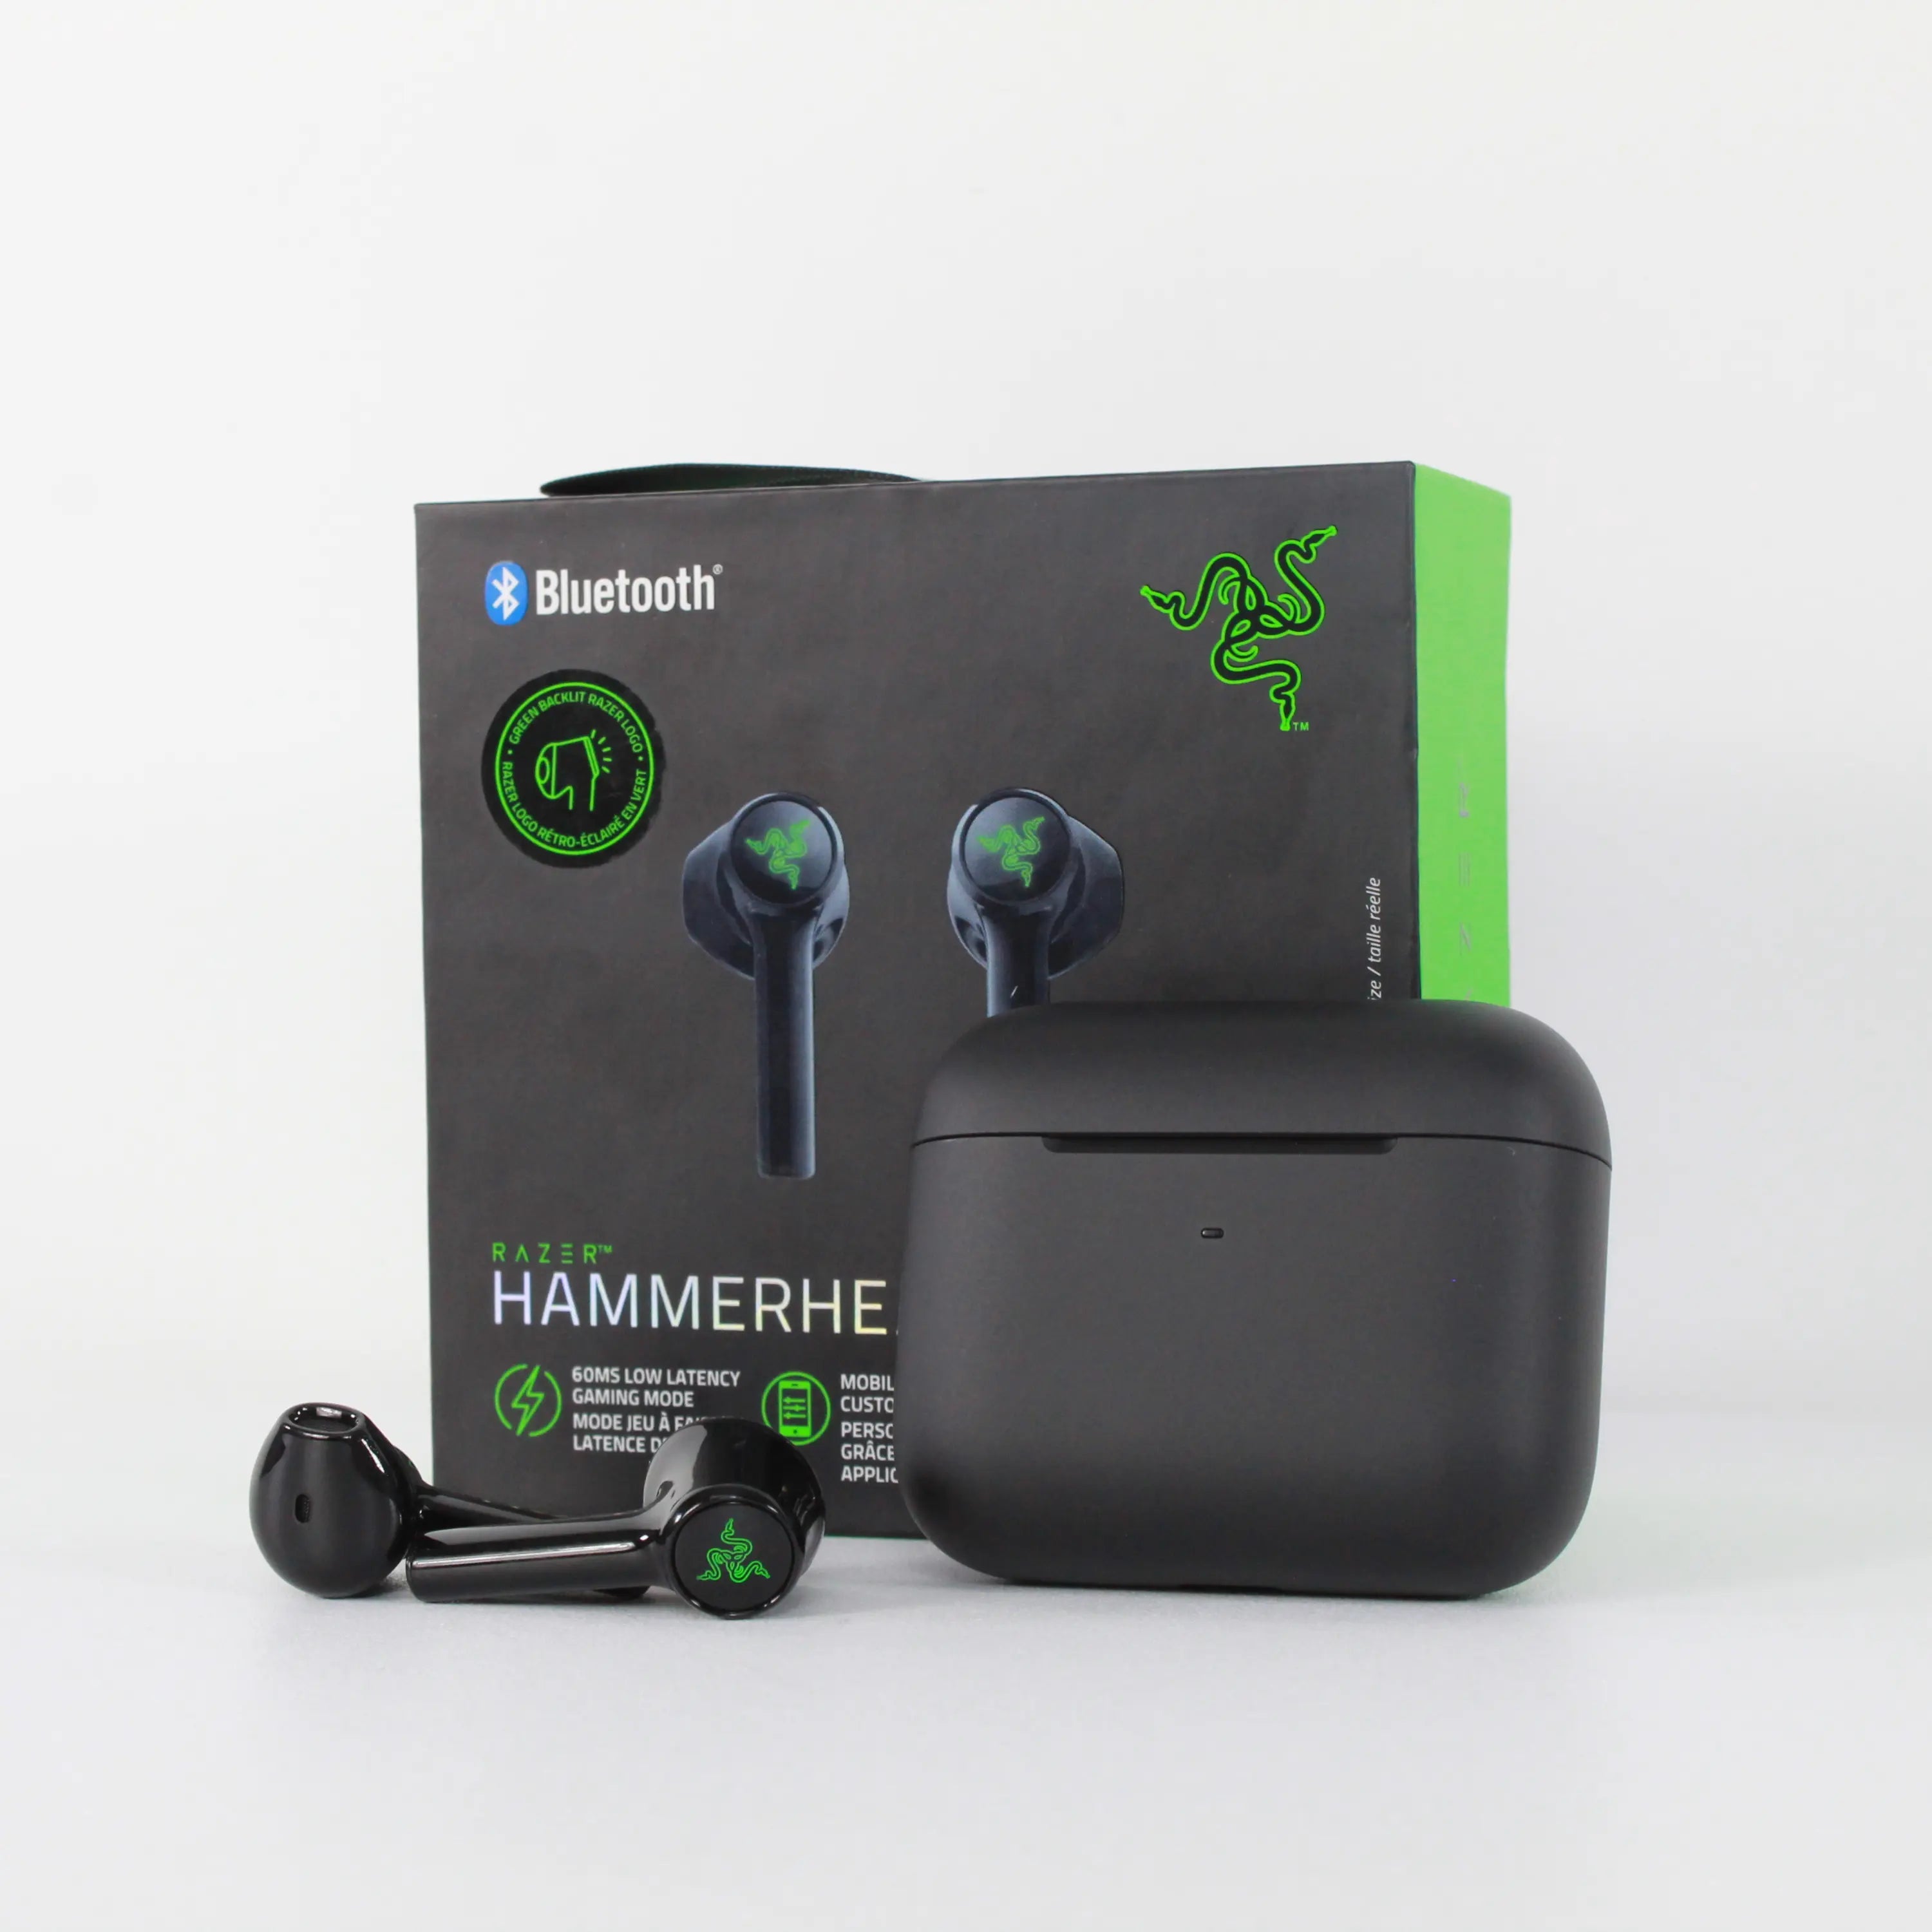  Razer Hammerhead - Auriculares inalámbricos Bluetooth